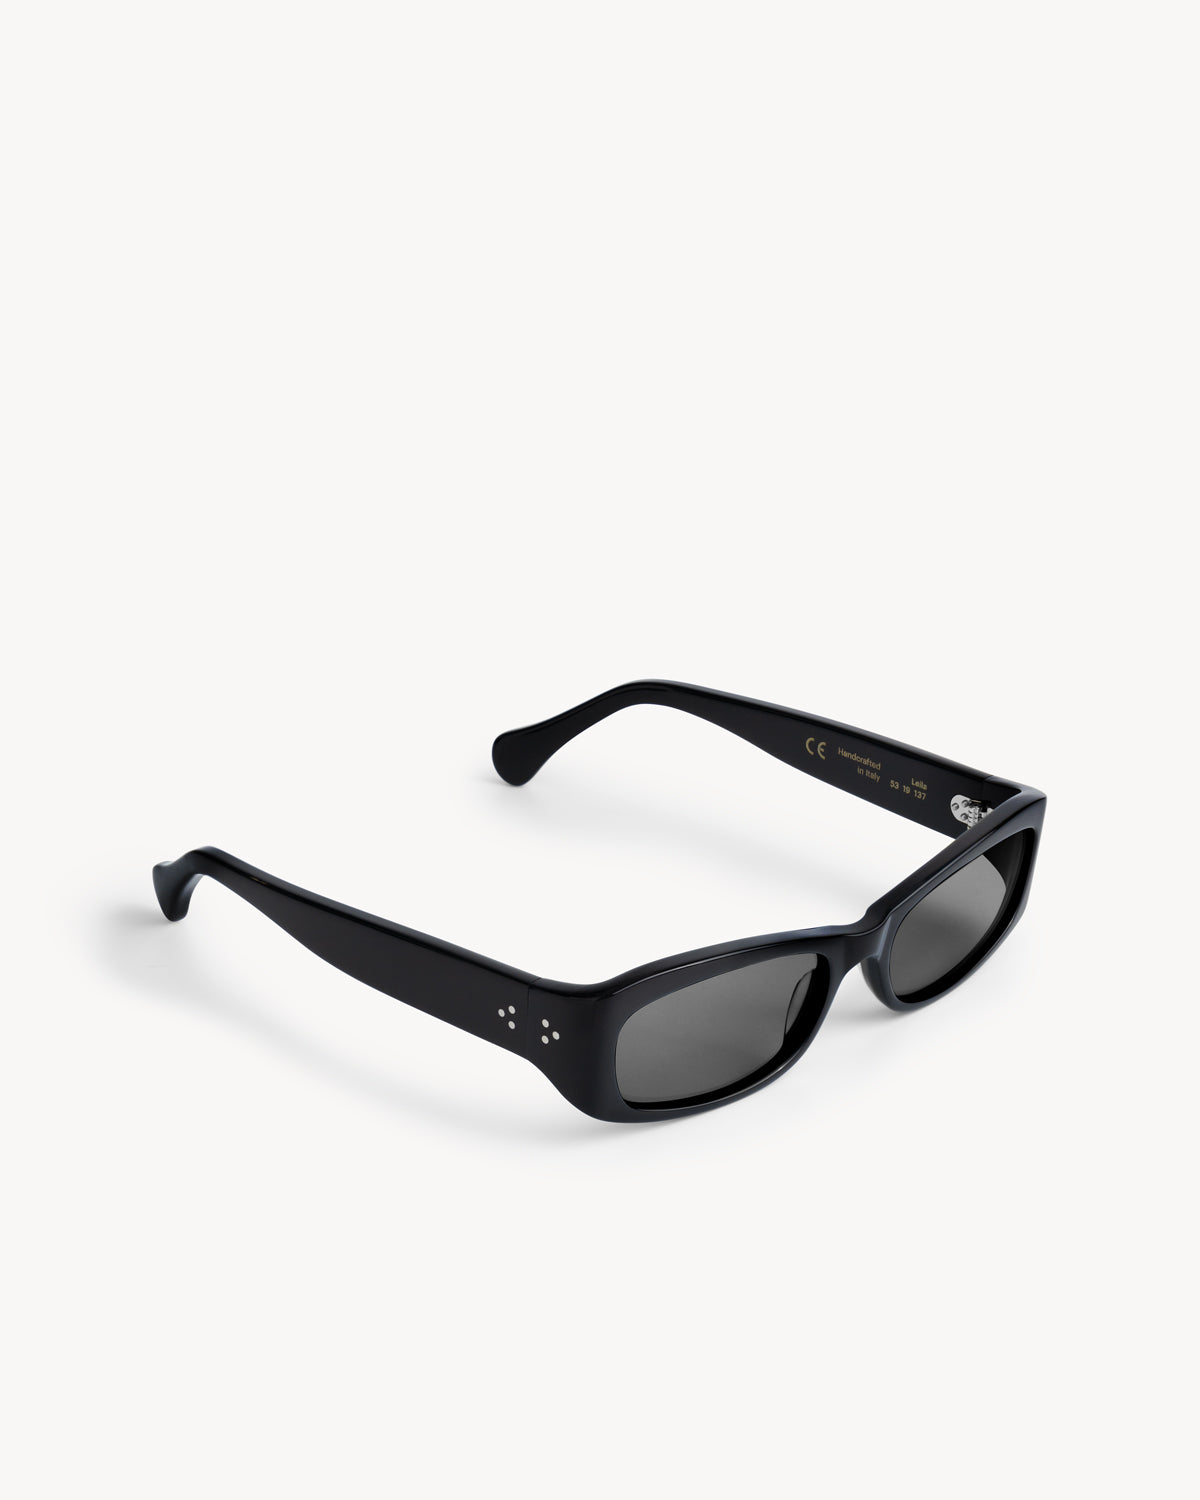 Port Tanger Leila Sunglasses in Black Acetate and Black Lenses 2